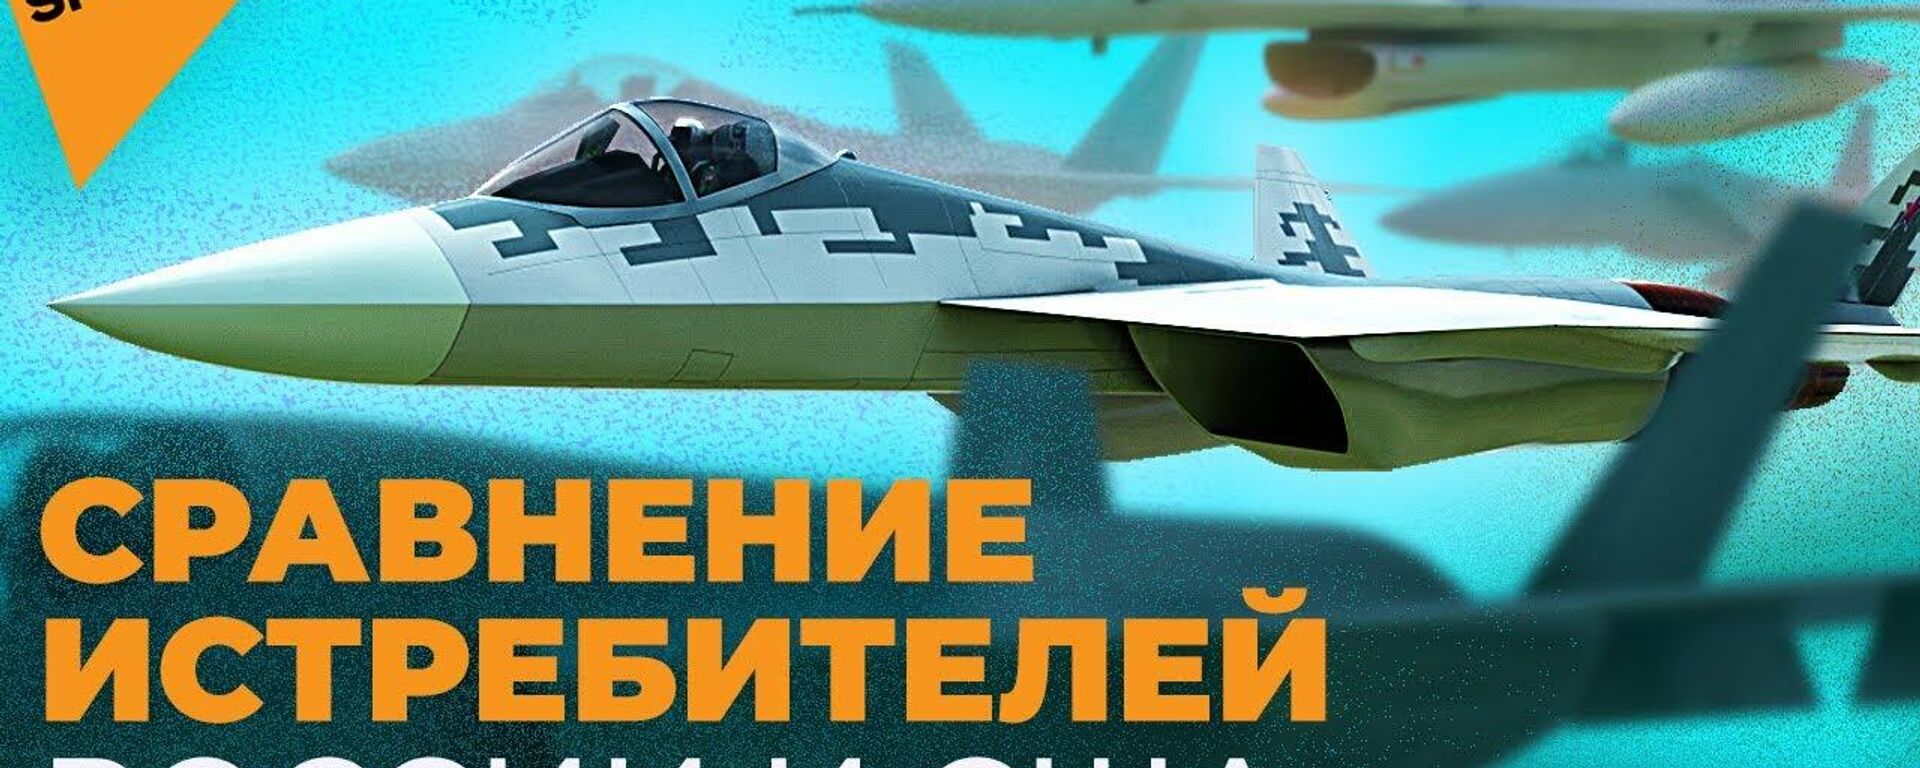 ТОП истребителей России и США: кто победит в воздушном бою? - Sputnik Latvija, 1920, 02.06.2021